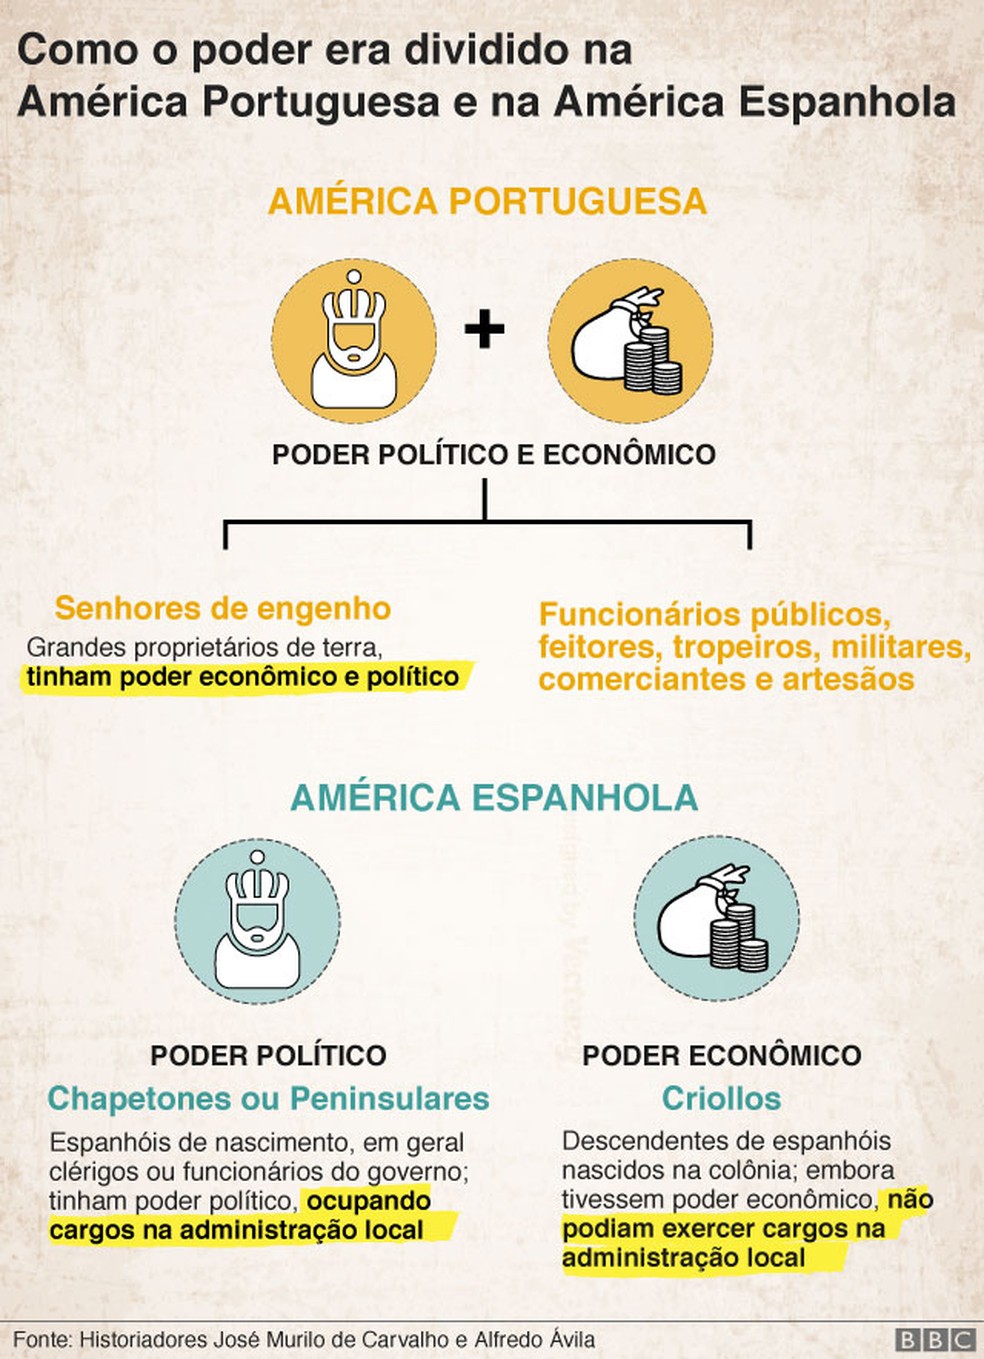 Diferenças culturais entre a Espanha e Portugal